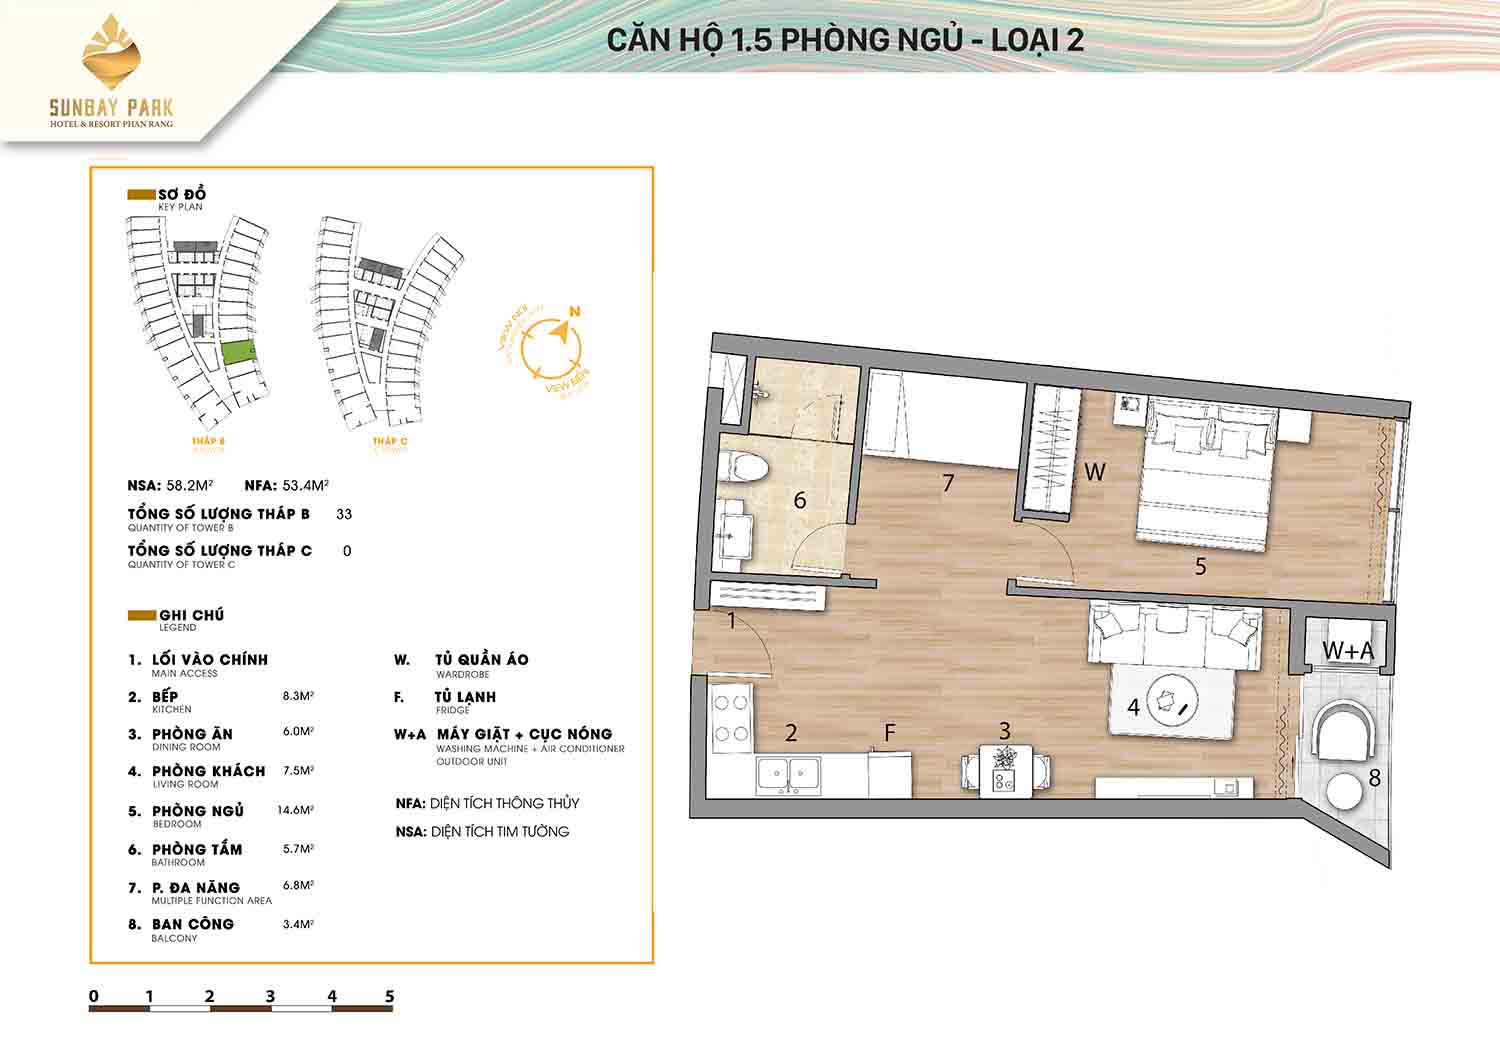 Thiết kế căn hộ 1,5 phòng ngủ 58m2 dự án Sunbay Park Phan Rang Ninh Thuận